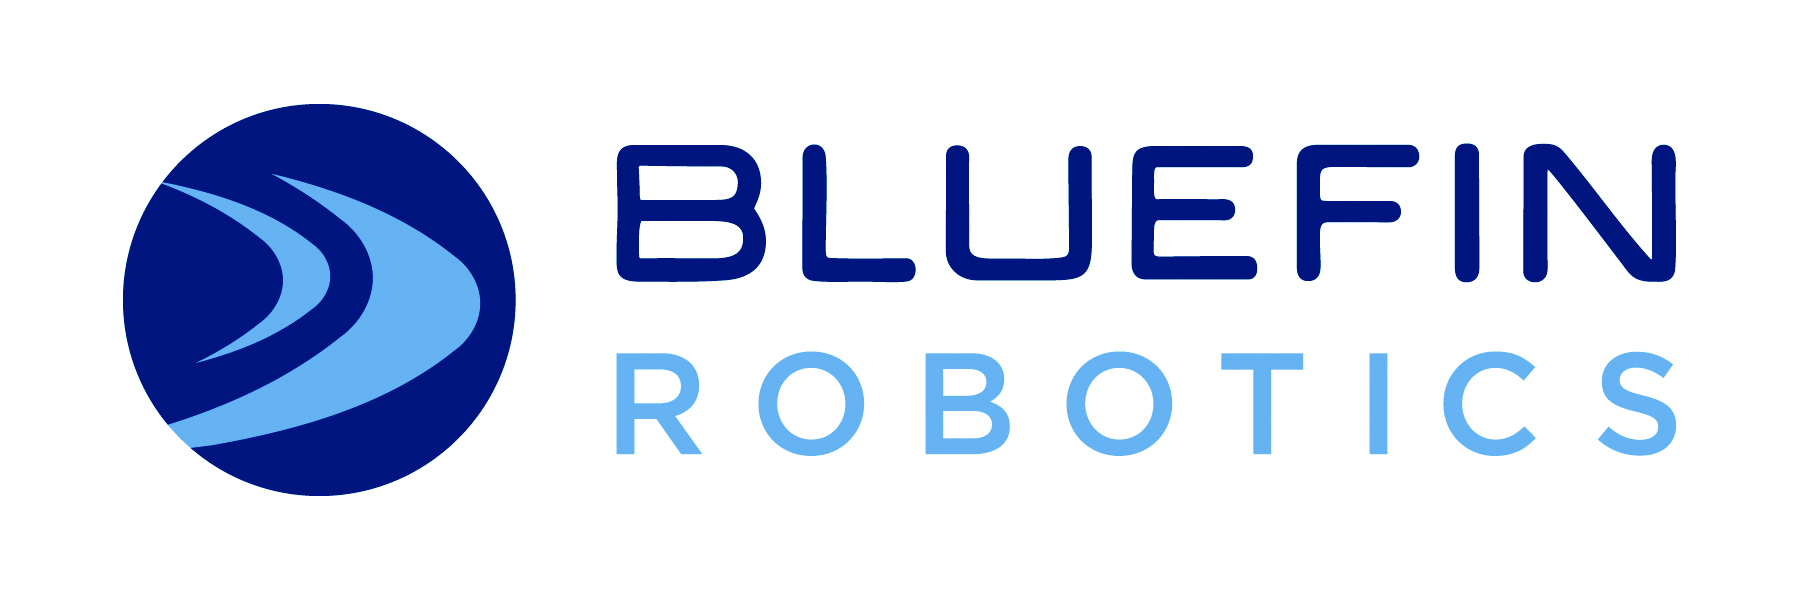 bluefin robotics logo